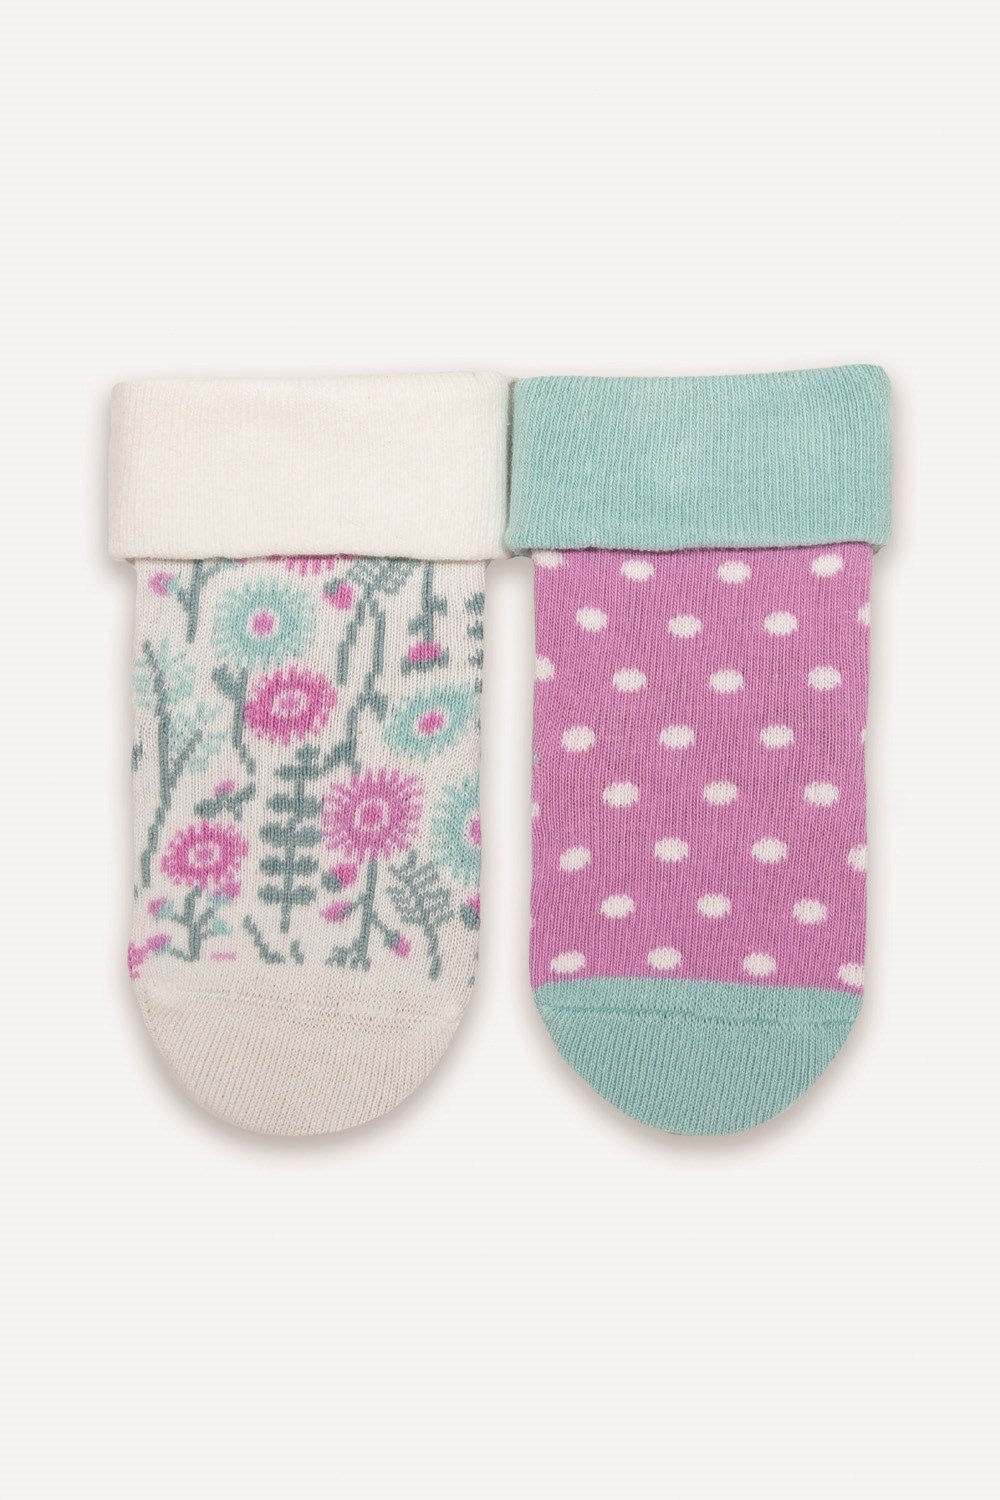 Daisy Ditsy Baby 2-Pack Socks -